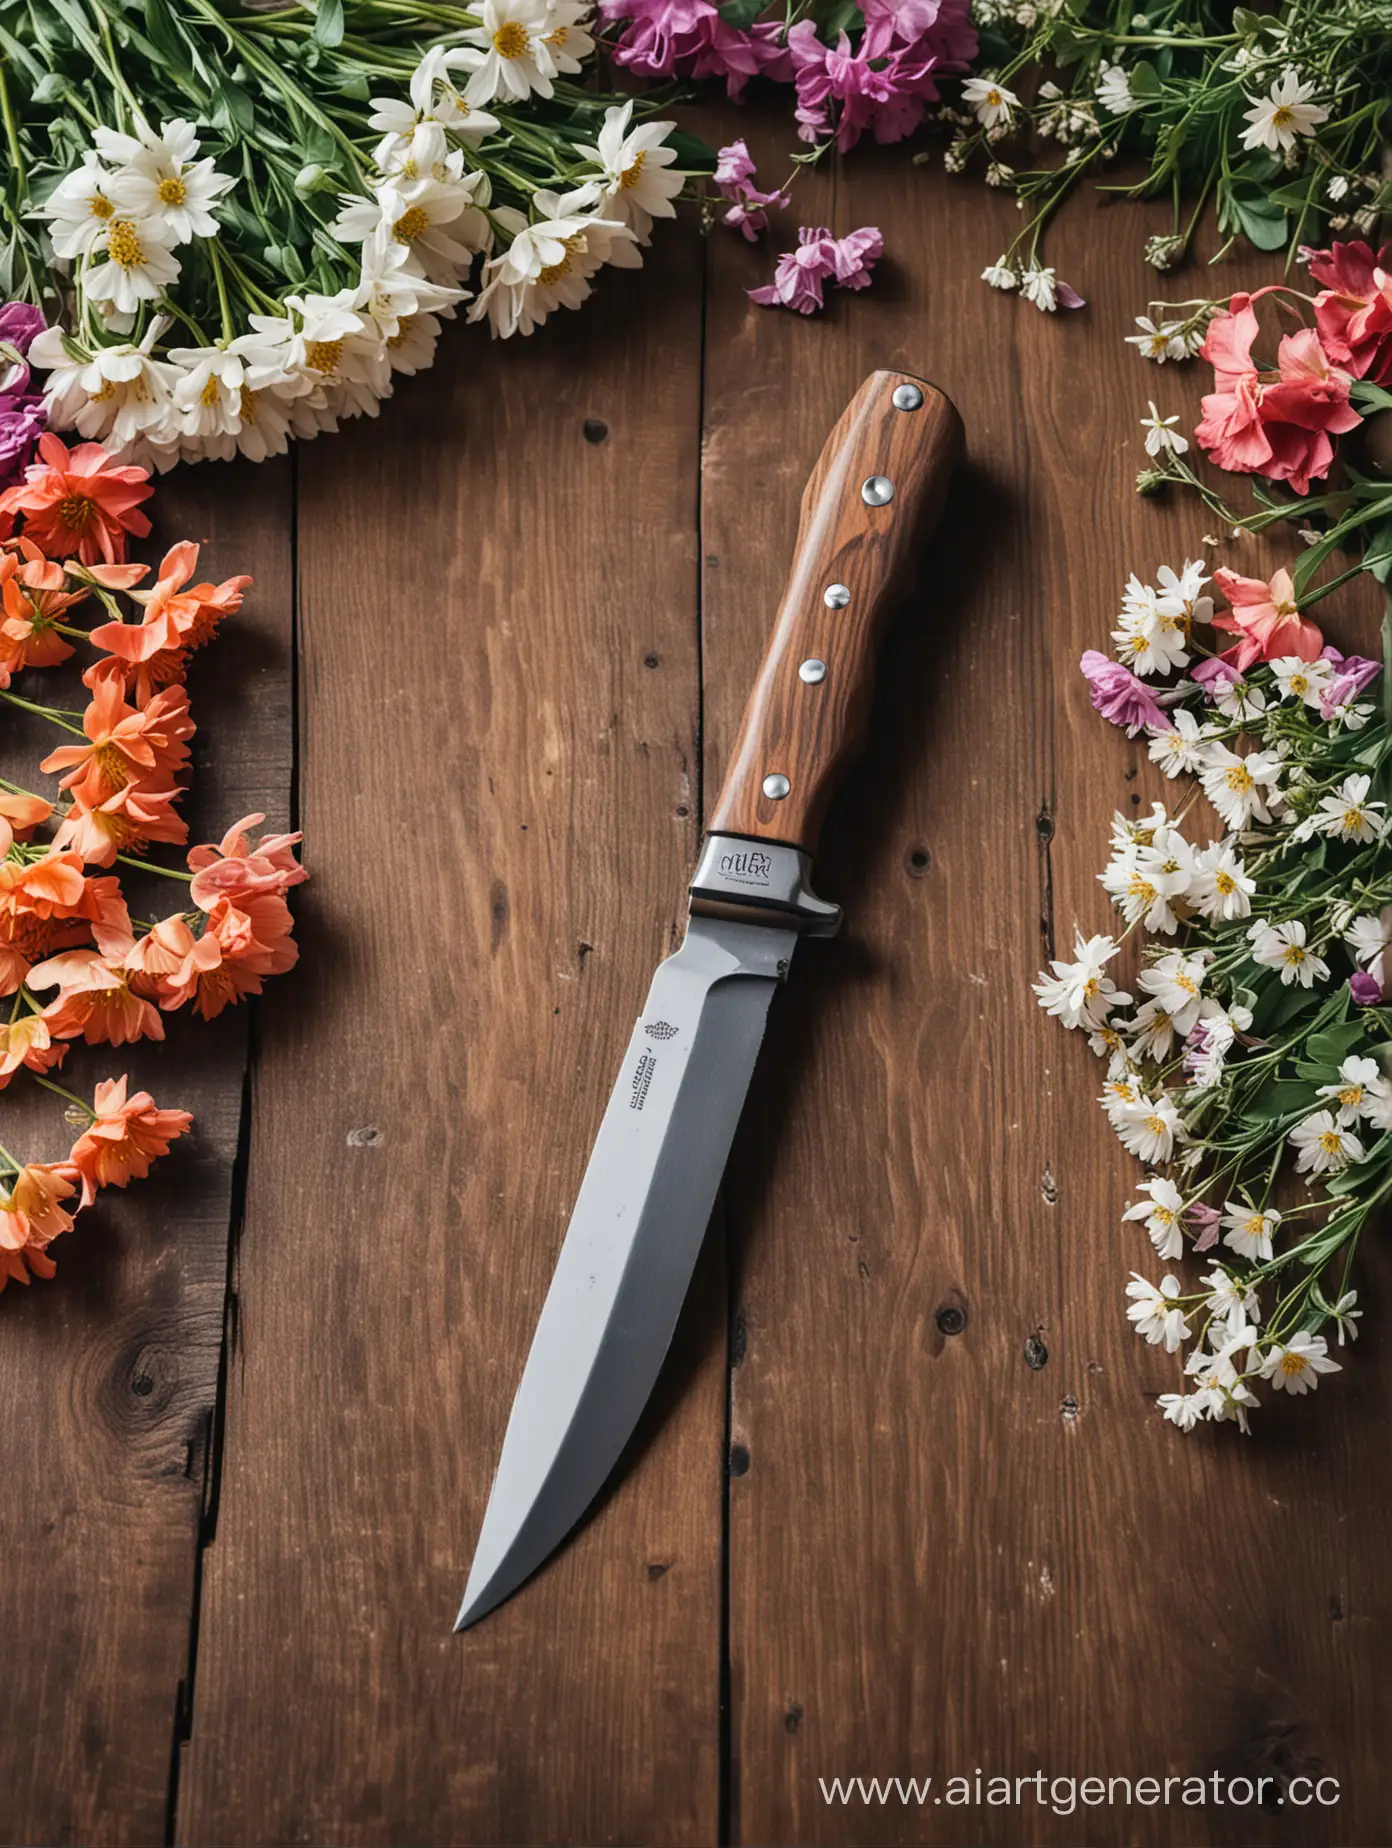 Нож, лежащий в окружении цветов на деревянном столе